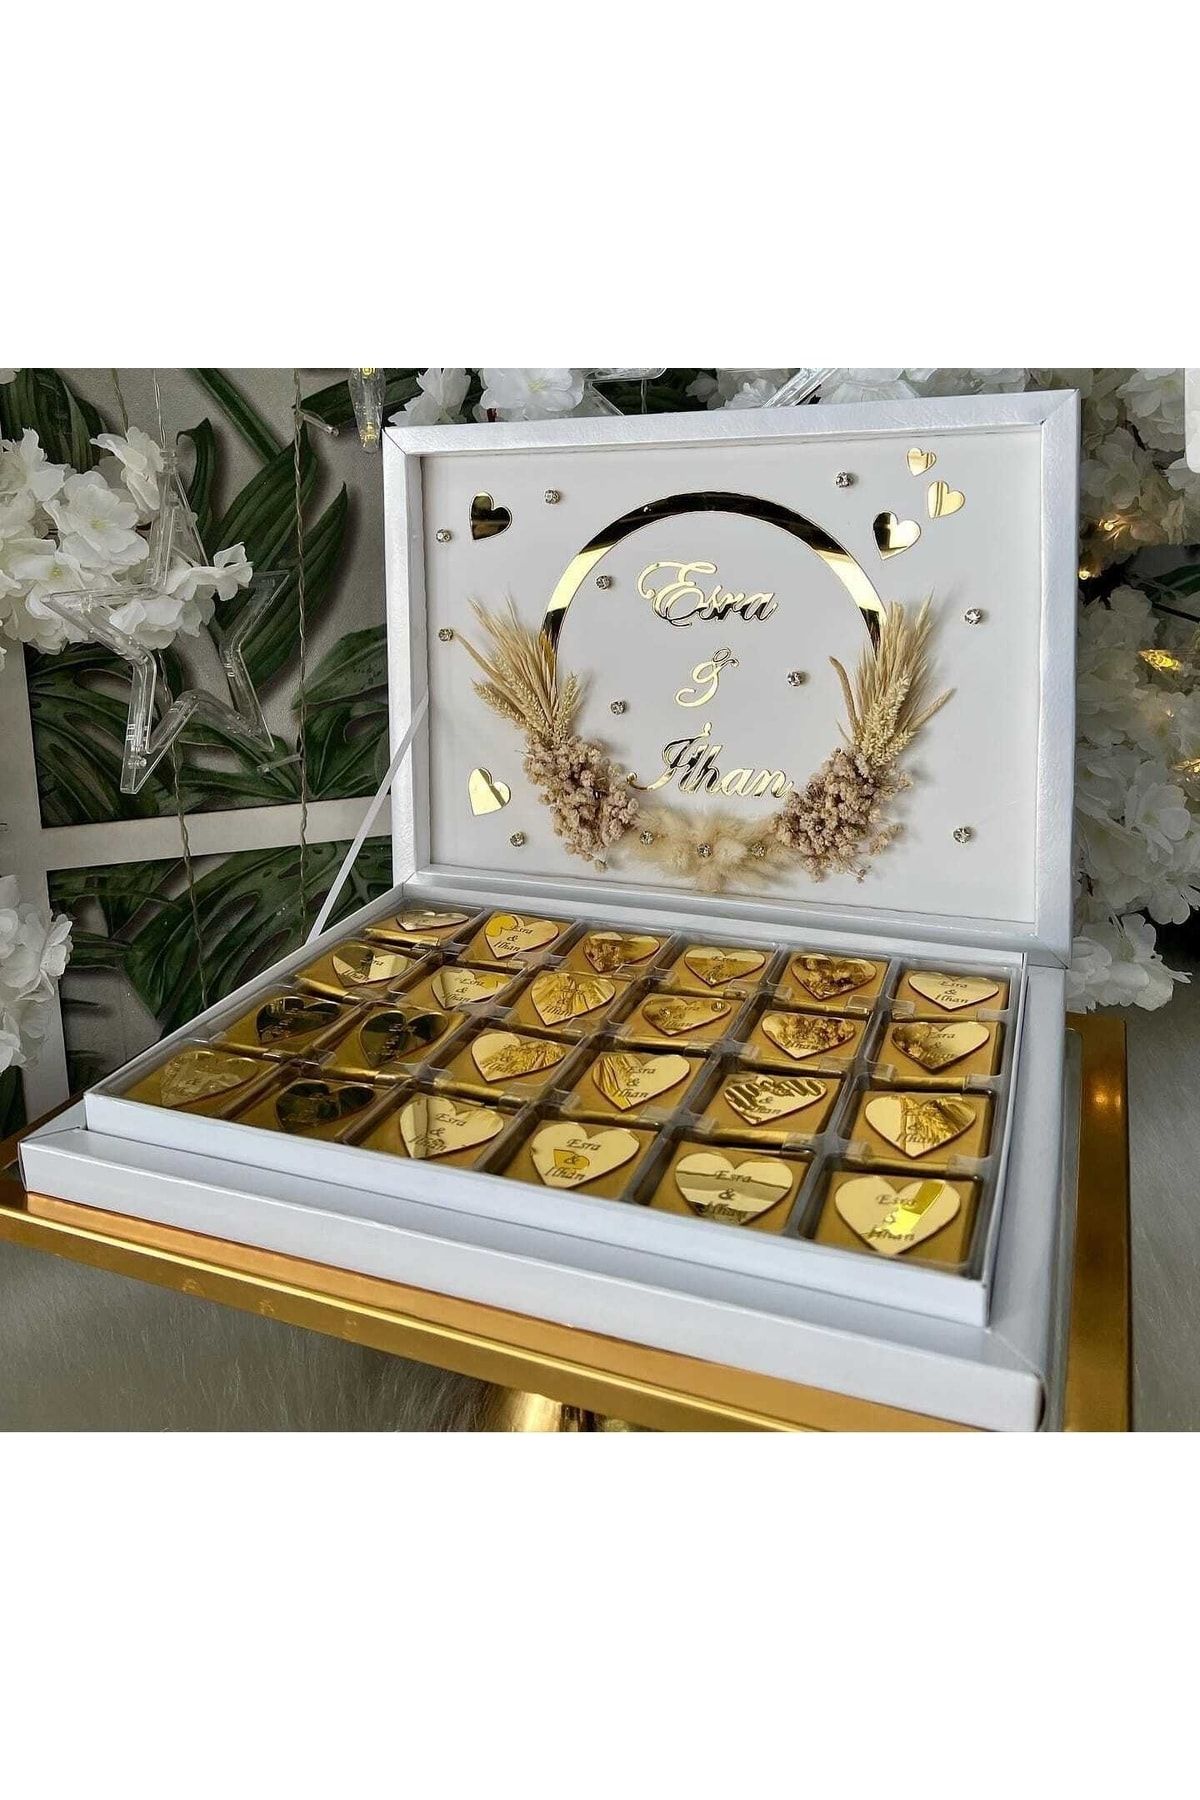 Evsay Kız Isteme Çikolatası Kişiye Özel Madlen Kutu Içerisinde Kişiye Özel 72 Adet Etiket Tasarımlı